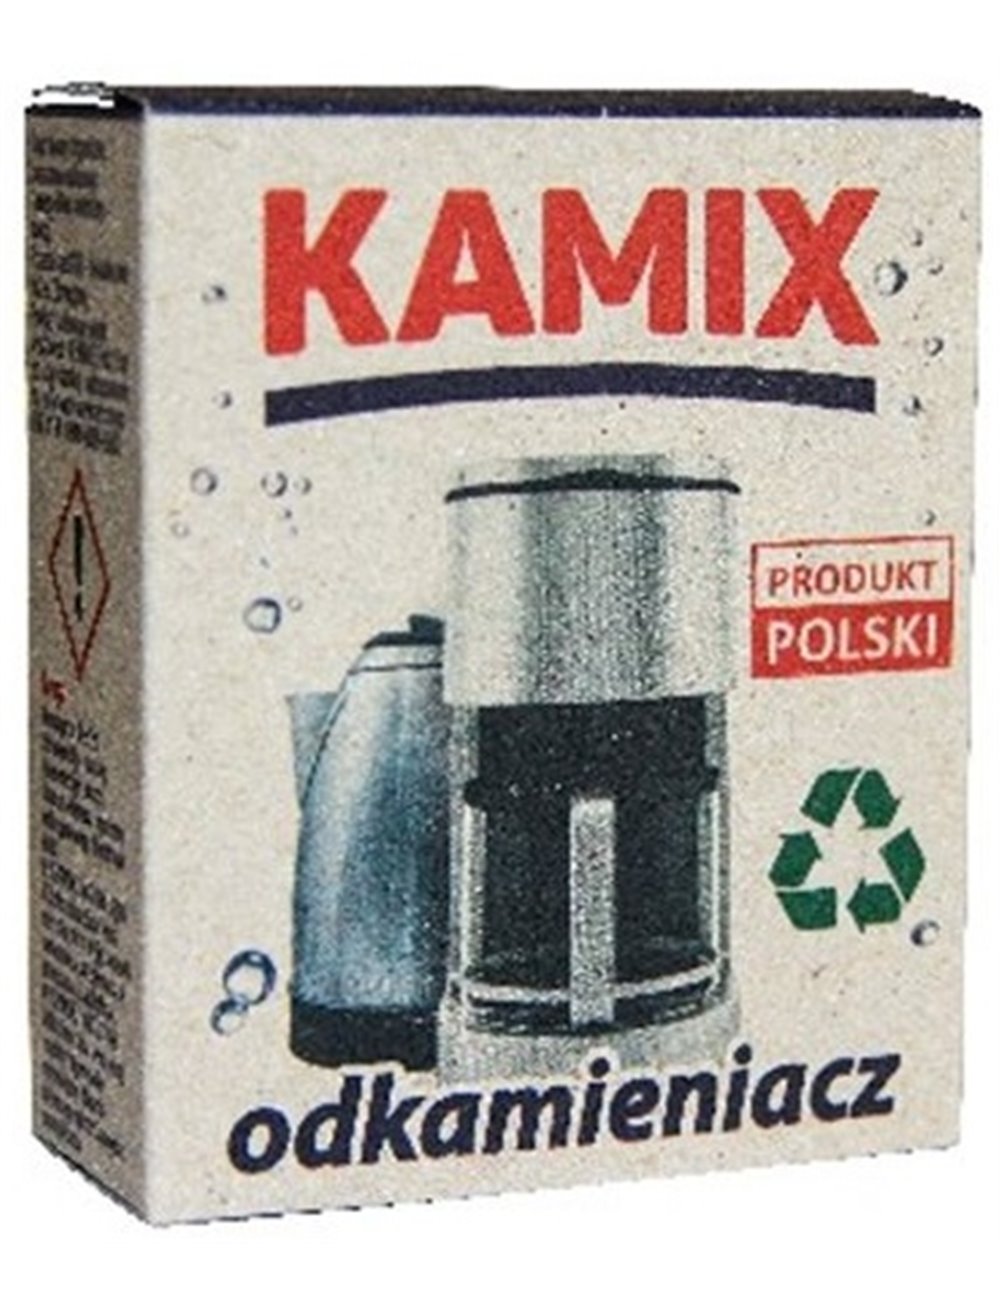 Kamix Odkamieniacz Do Urządzeń Domowych (2 x 75 g)